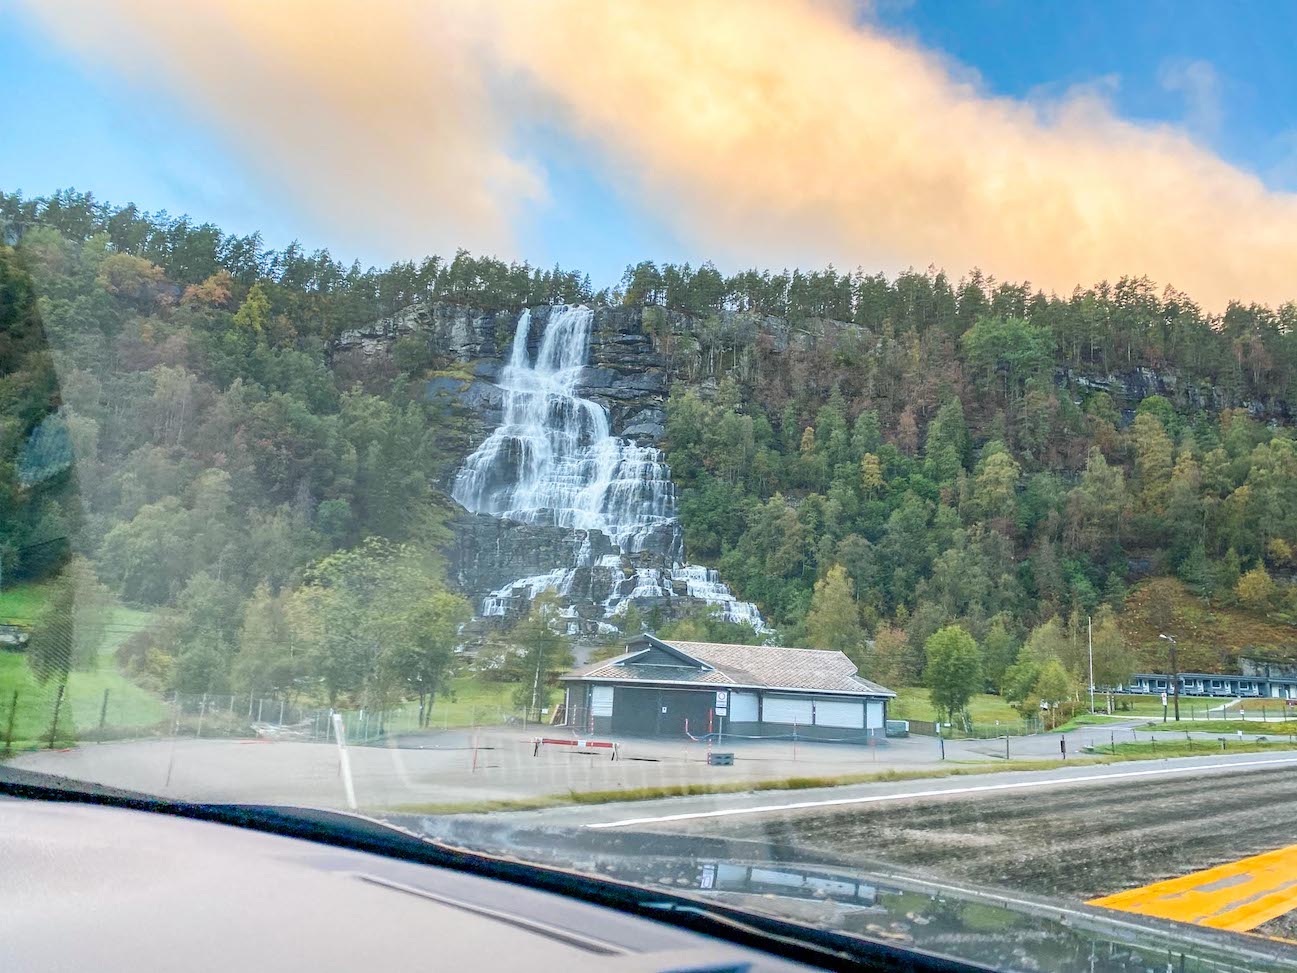 Bergen to Alesund, Tvinnefossen waterfall